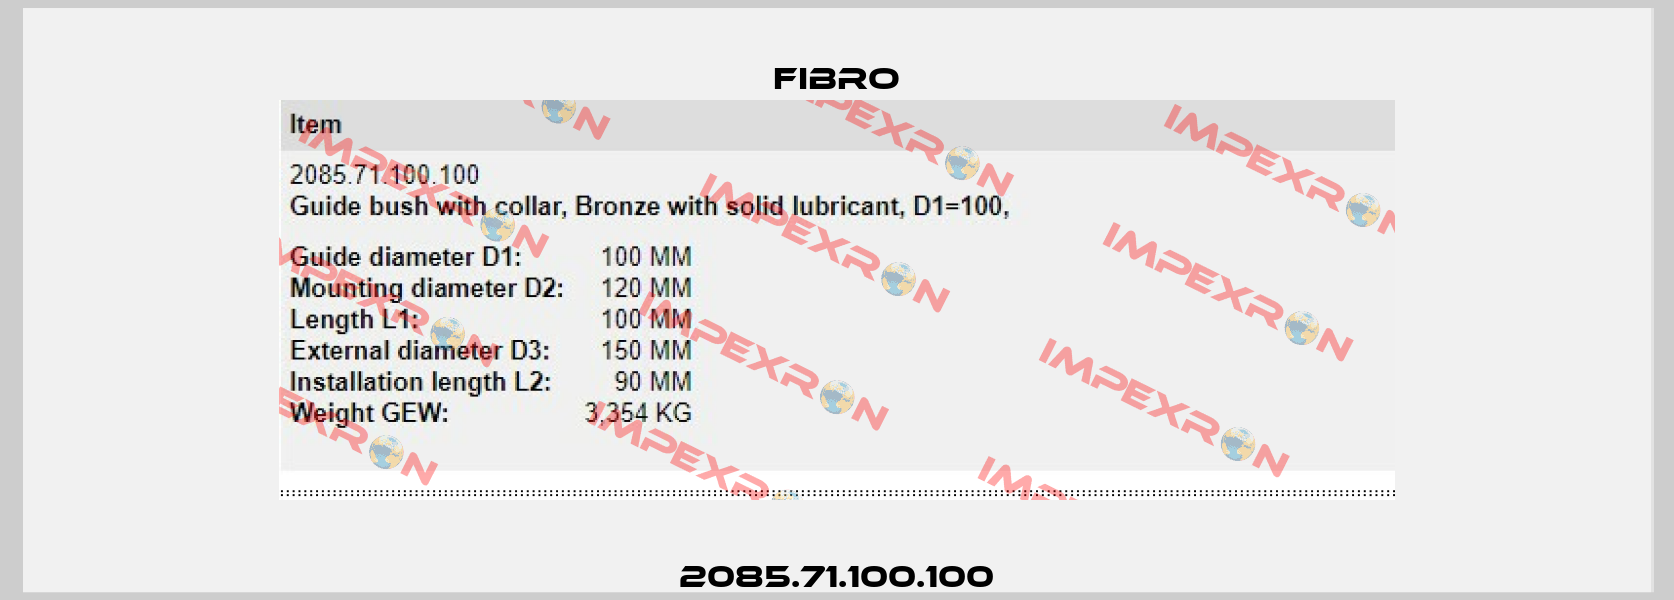 2085.71.100.100 Fibro